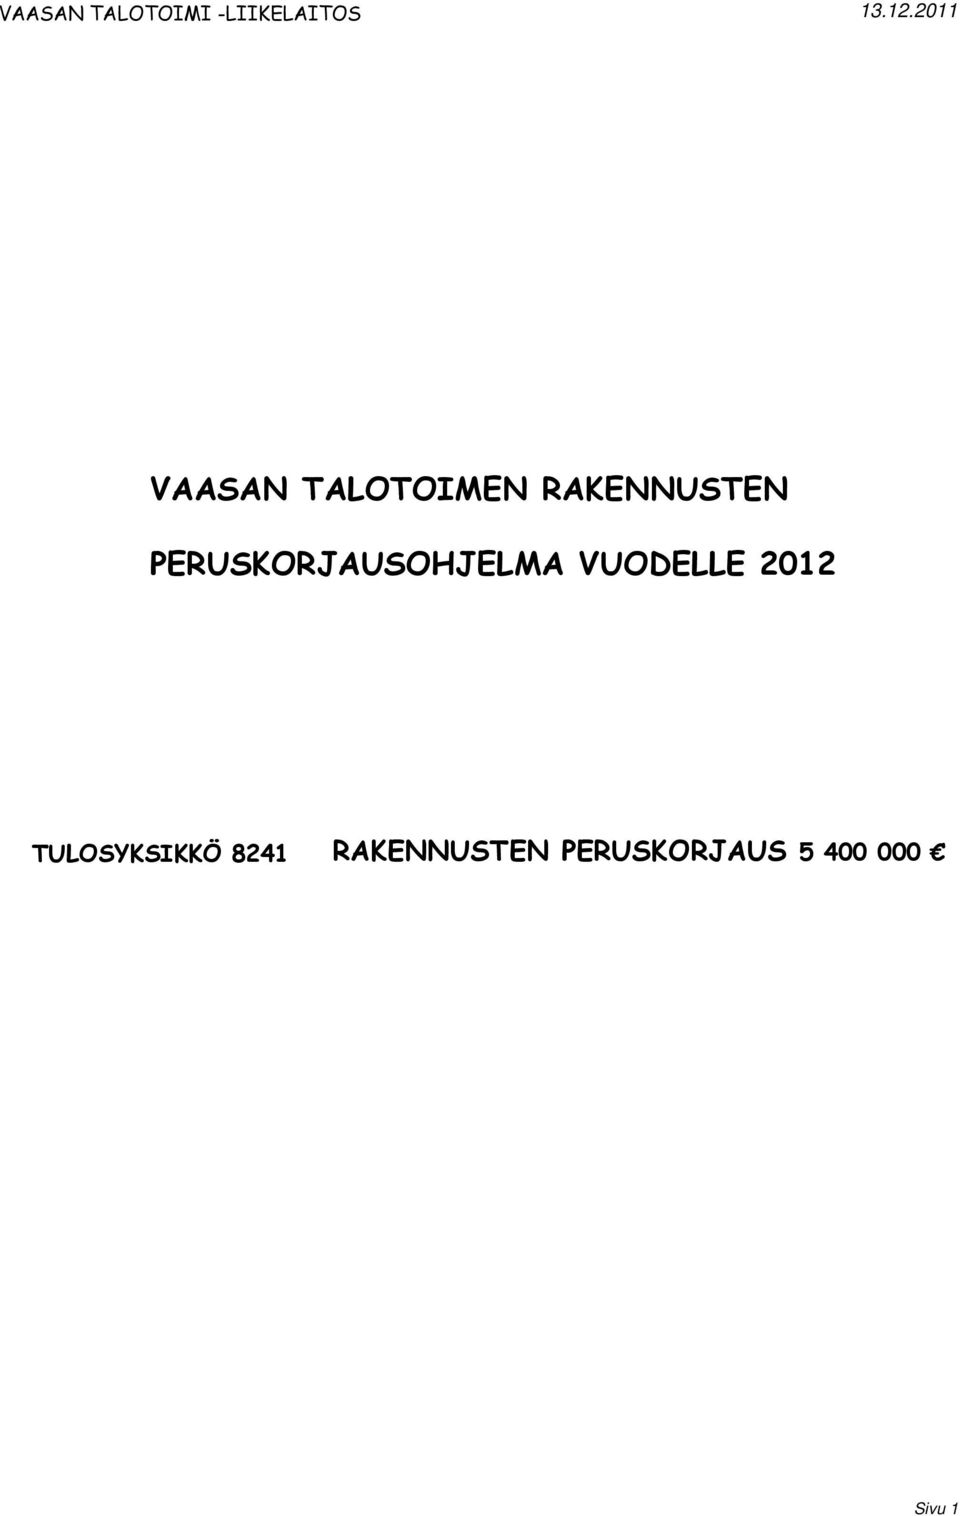 2012 TULOSYKSIKKÖ 8241